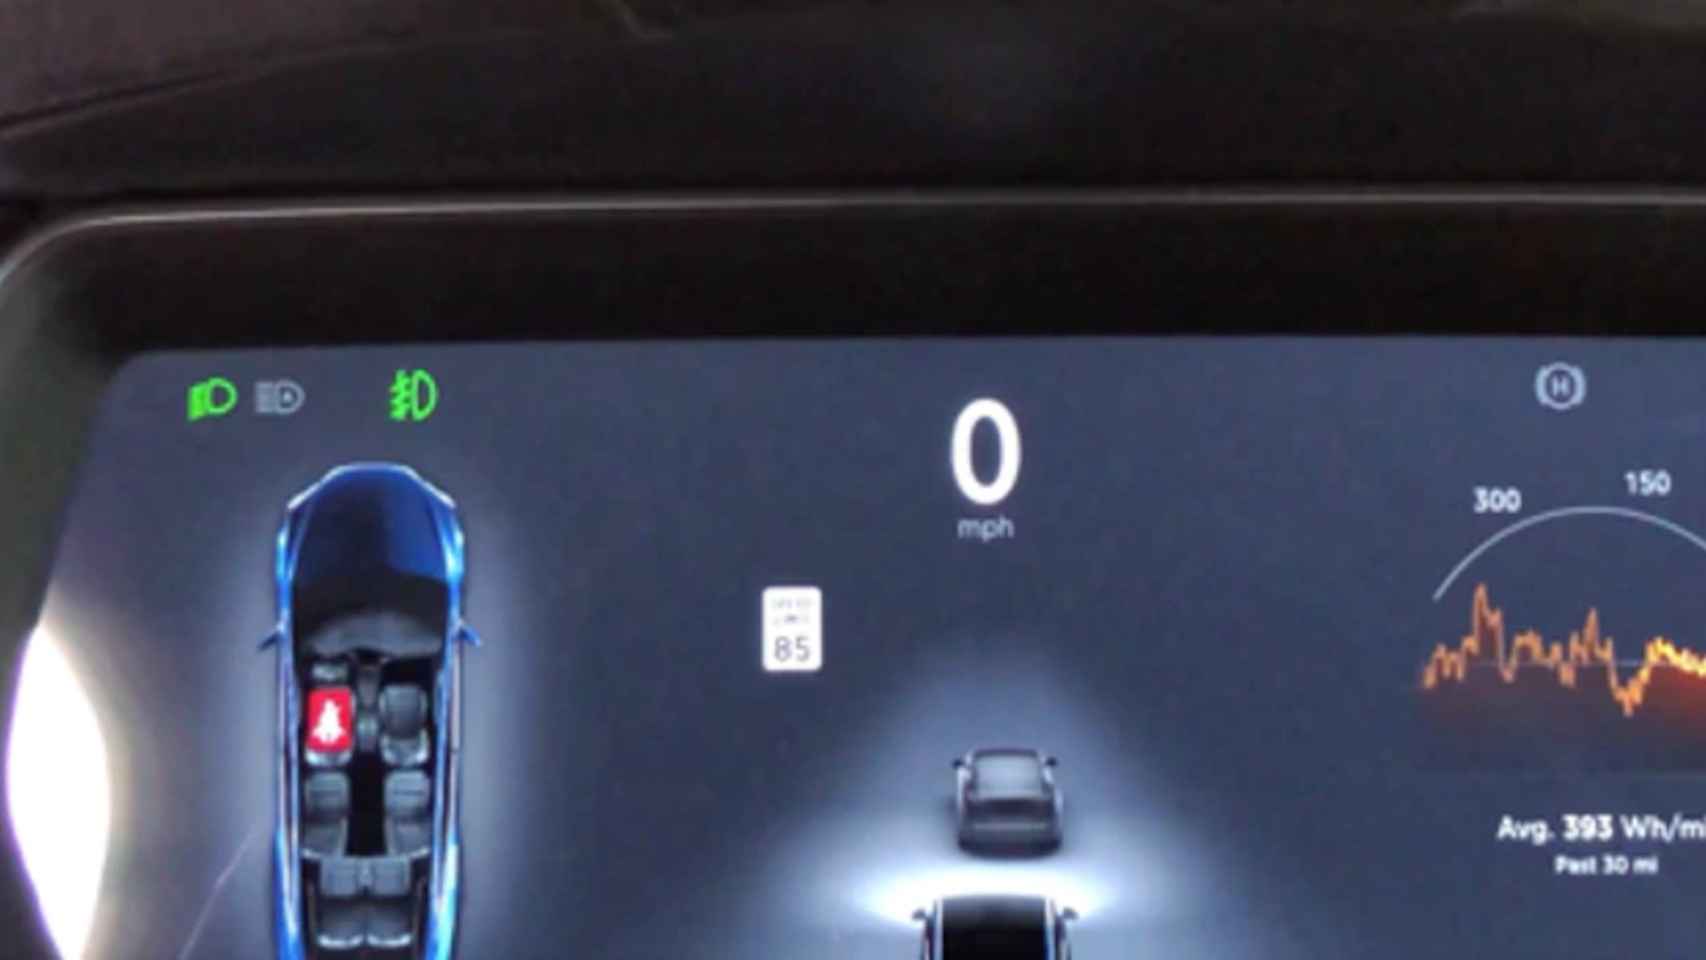 El Tesla reconoce la señal modificada como de 85 mph